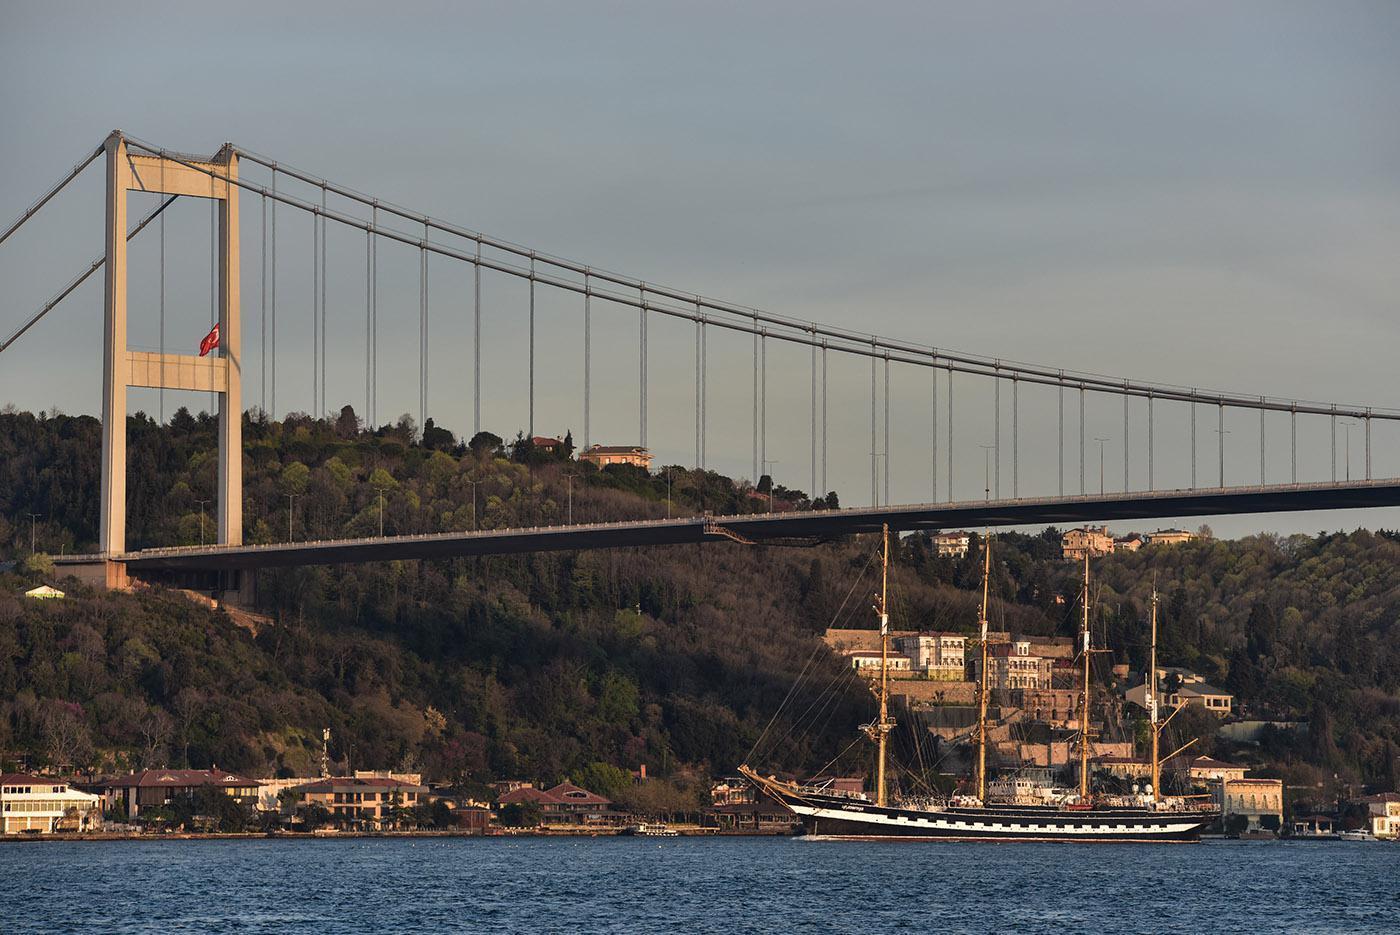 Tarihi gemi Kruzenshtern İstanbul Boğazından geçti